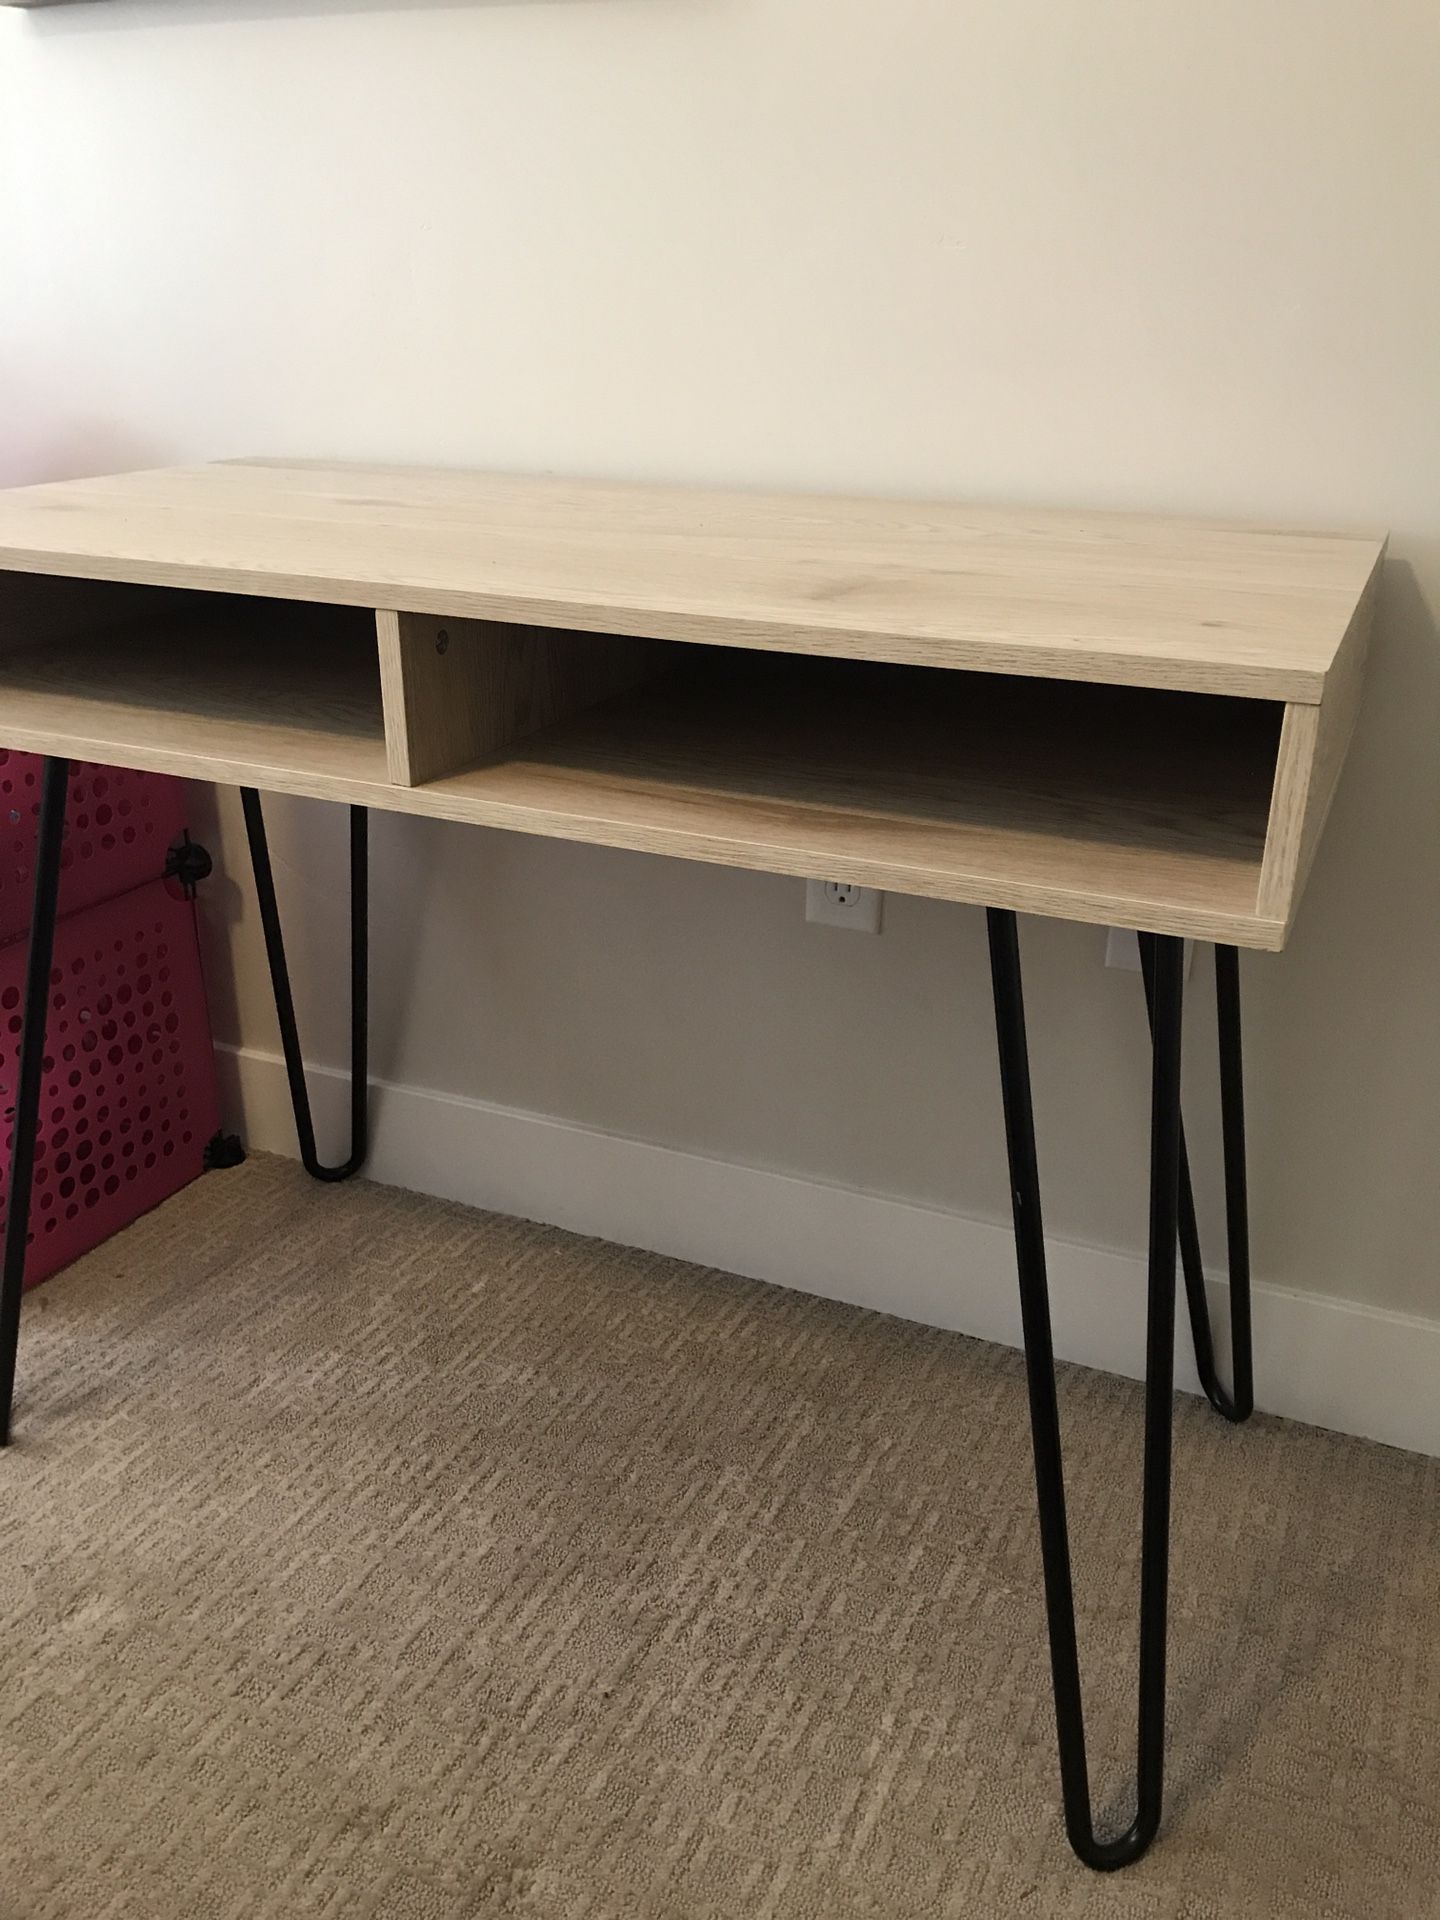 Brand new wooden desk